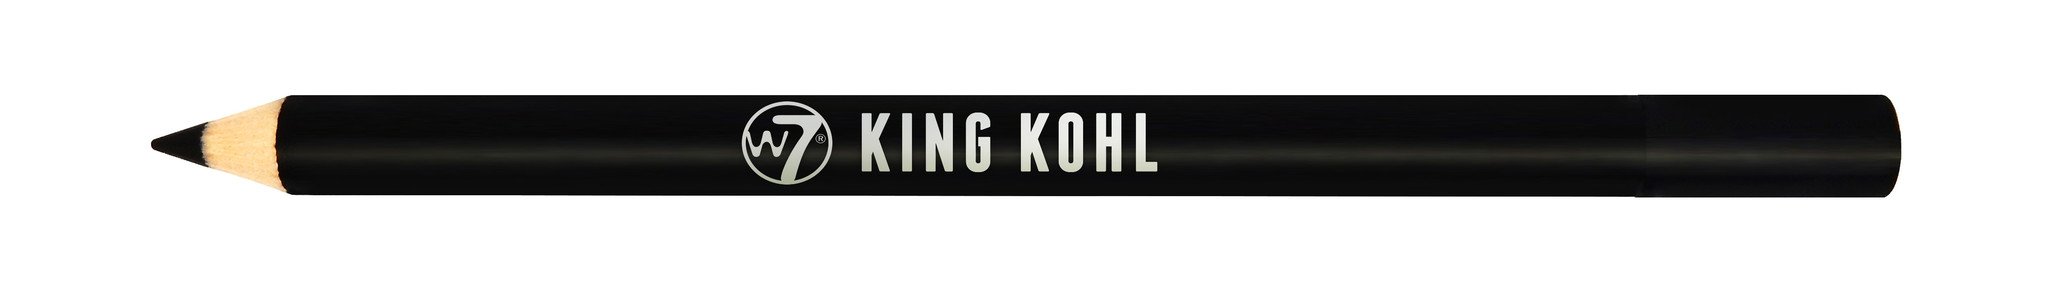 W7 King Kohl Black Pencil